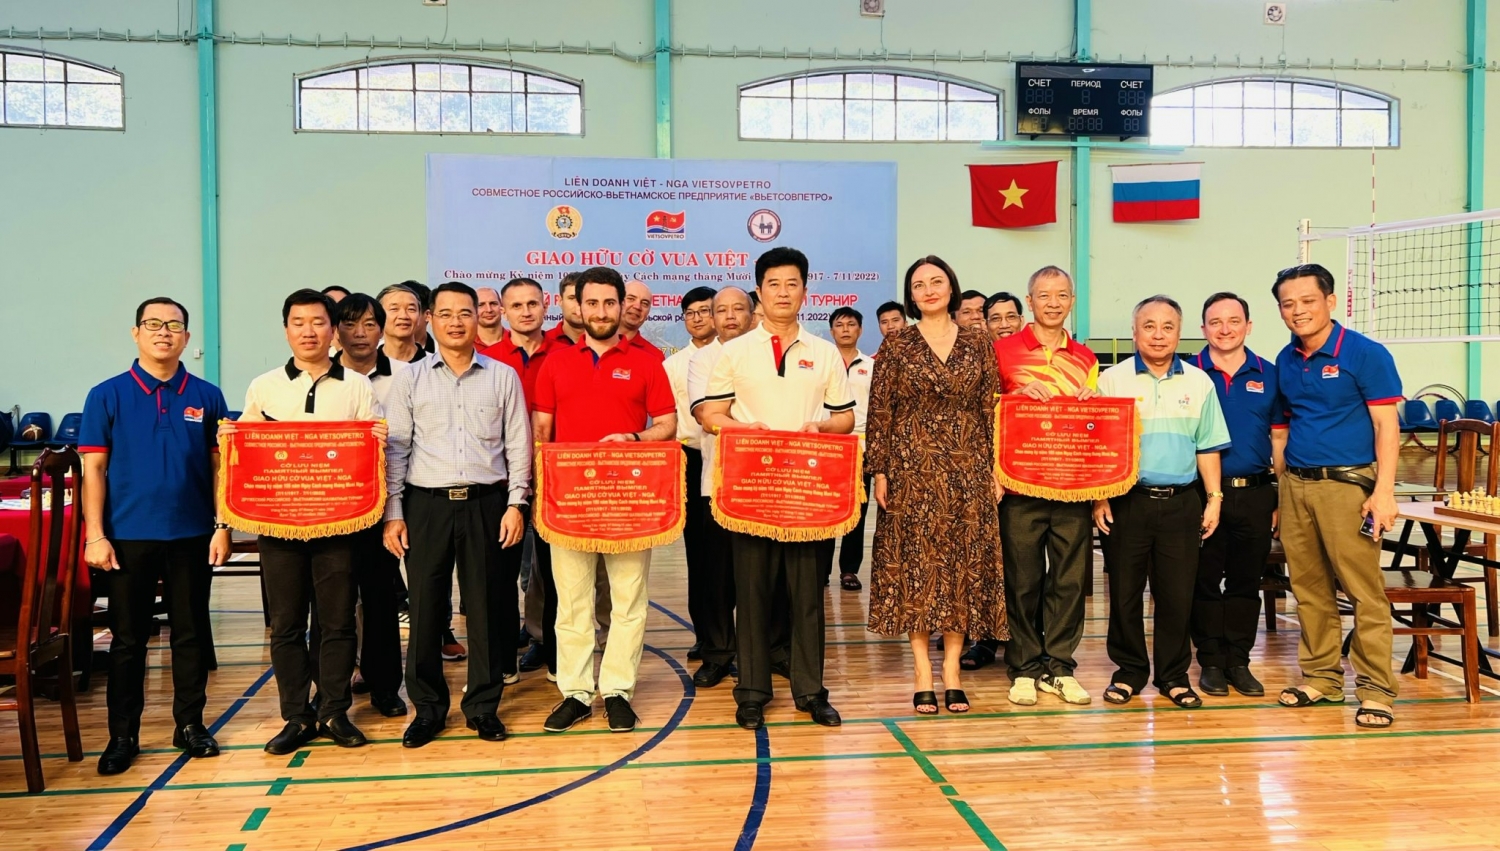 Công đoàn Vietsovpetro tổ chức Giao hữu Cờ vua Việt – Nga